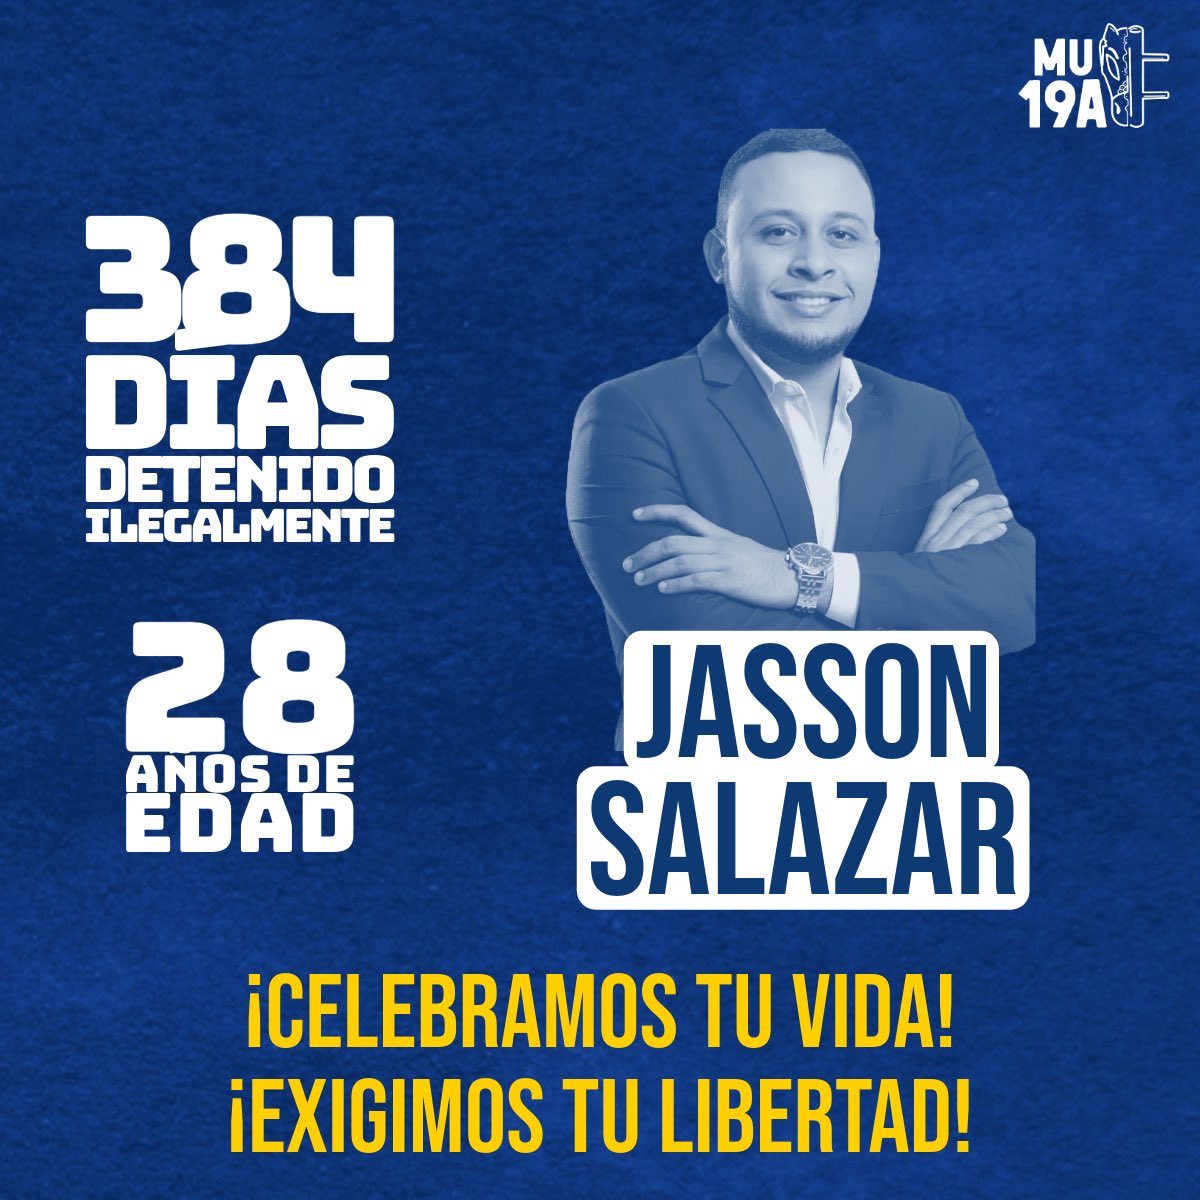 Hoy, en su cumpleaños, elevamos nuestras voces para celebrar su vida, valentía y resistencia. Queremos que tu día, Jasson, esté lleno de esperanza y fortaleza mientras continuamos luchando por tu libertad. #LiberenAJassonSalazar #SOSNicaragua